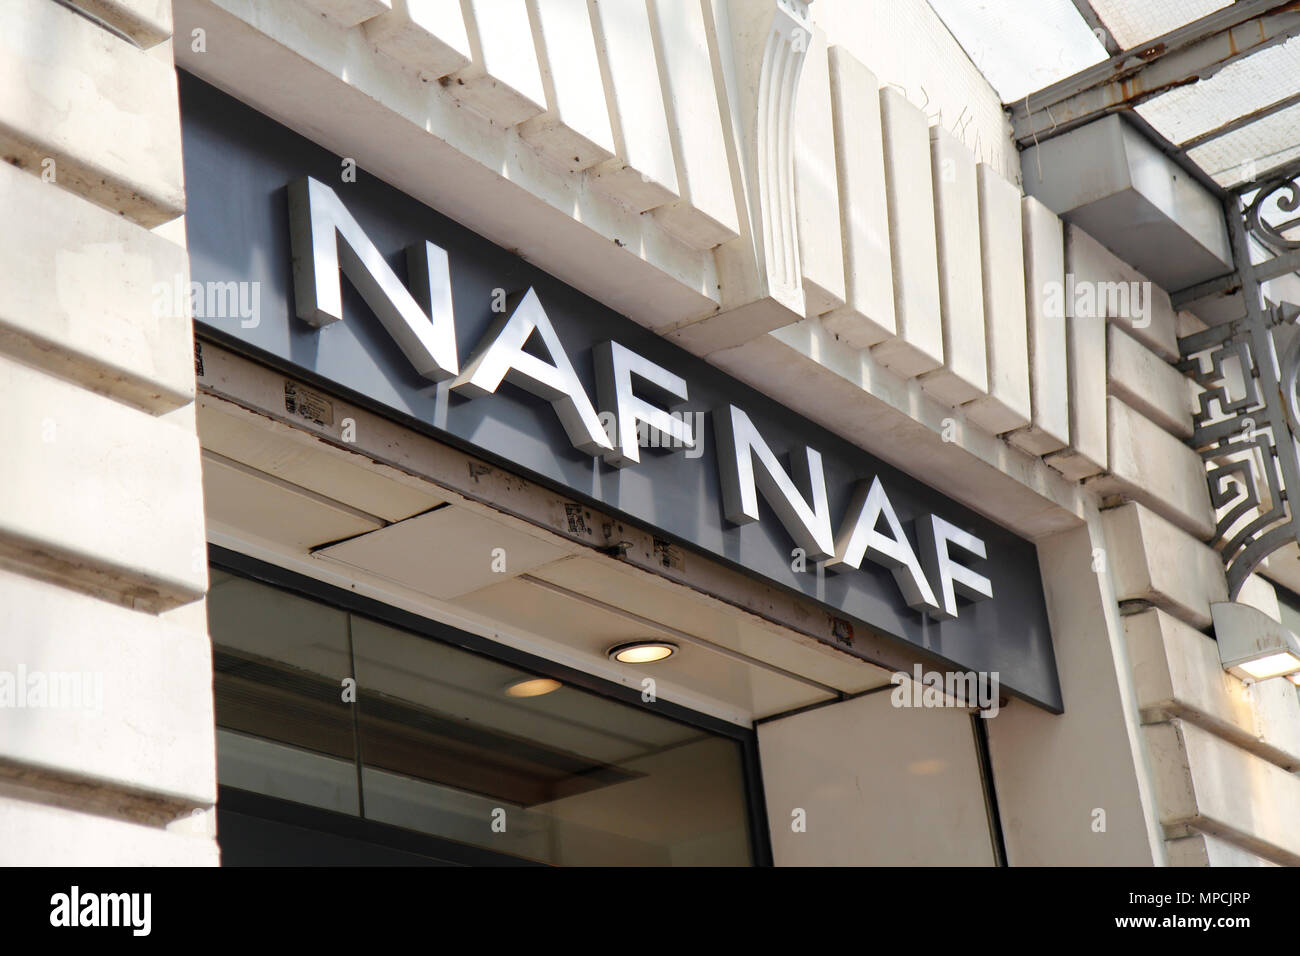 Naf naf sign hi-res stock photography and images - Alamy